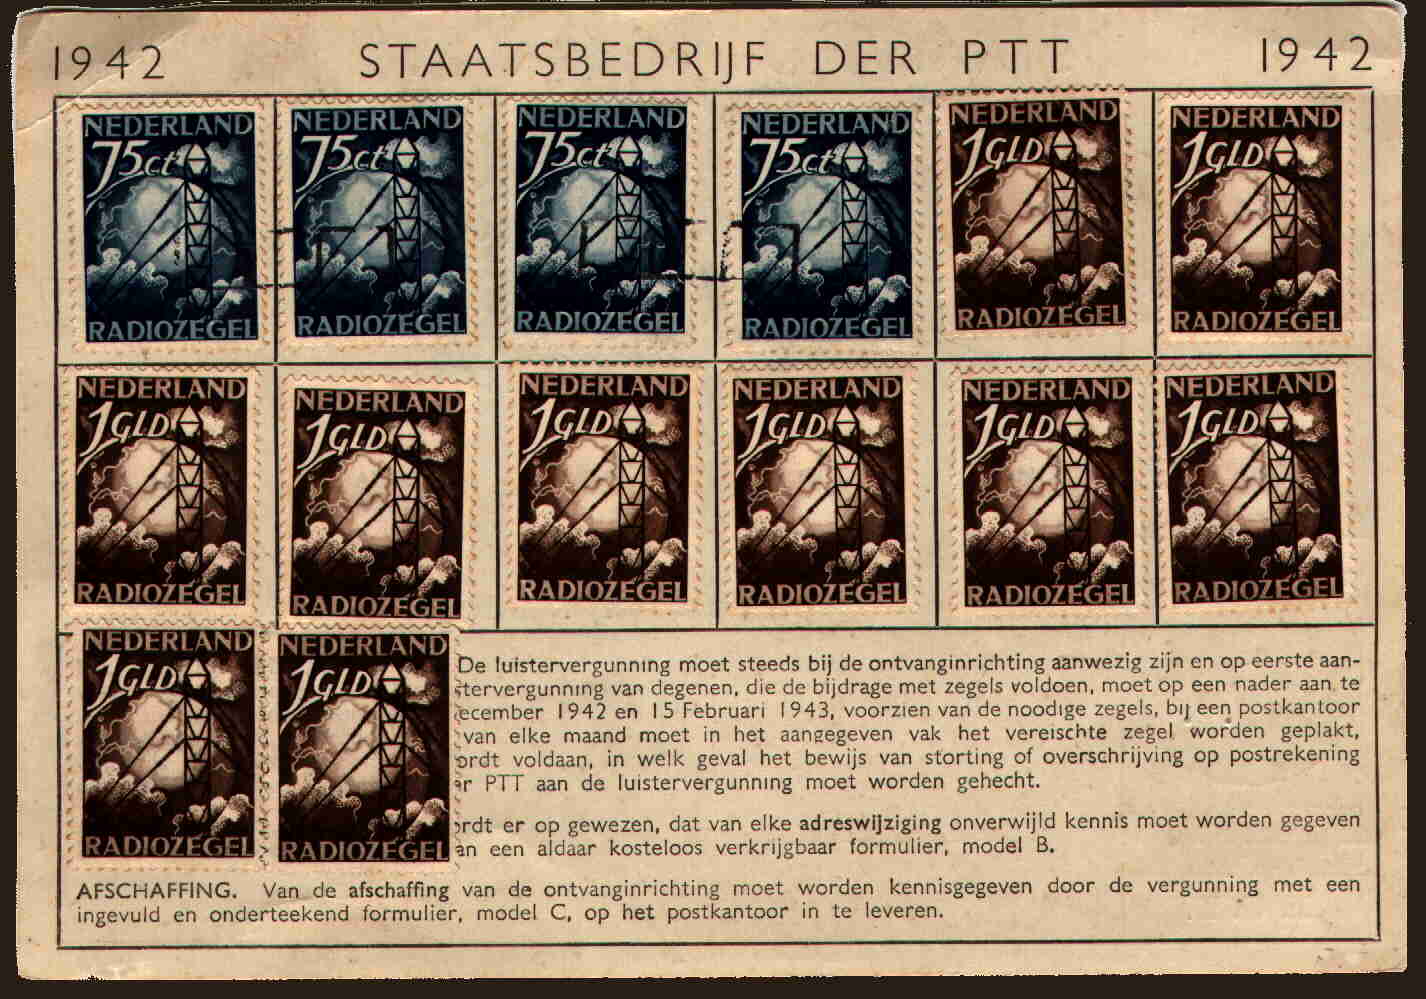 Dutch 1942 radio license, front